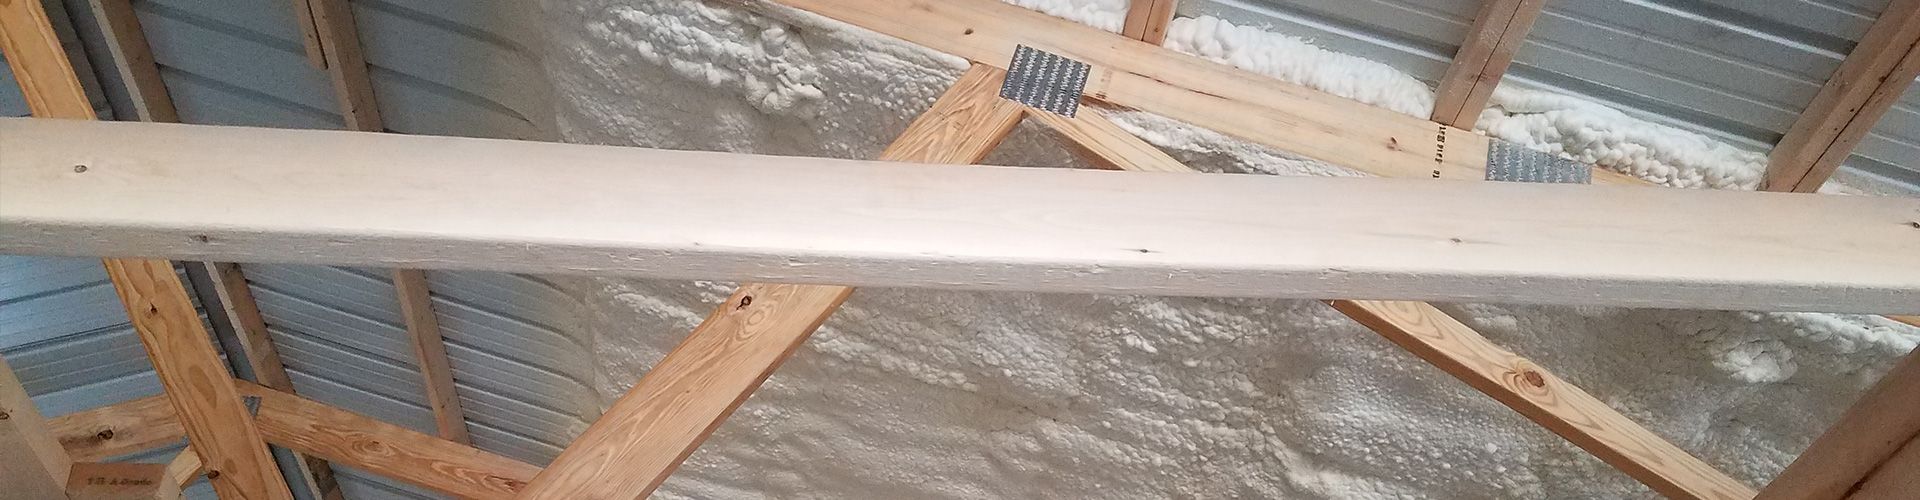 applying spray foam insulation to a pole barn